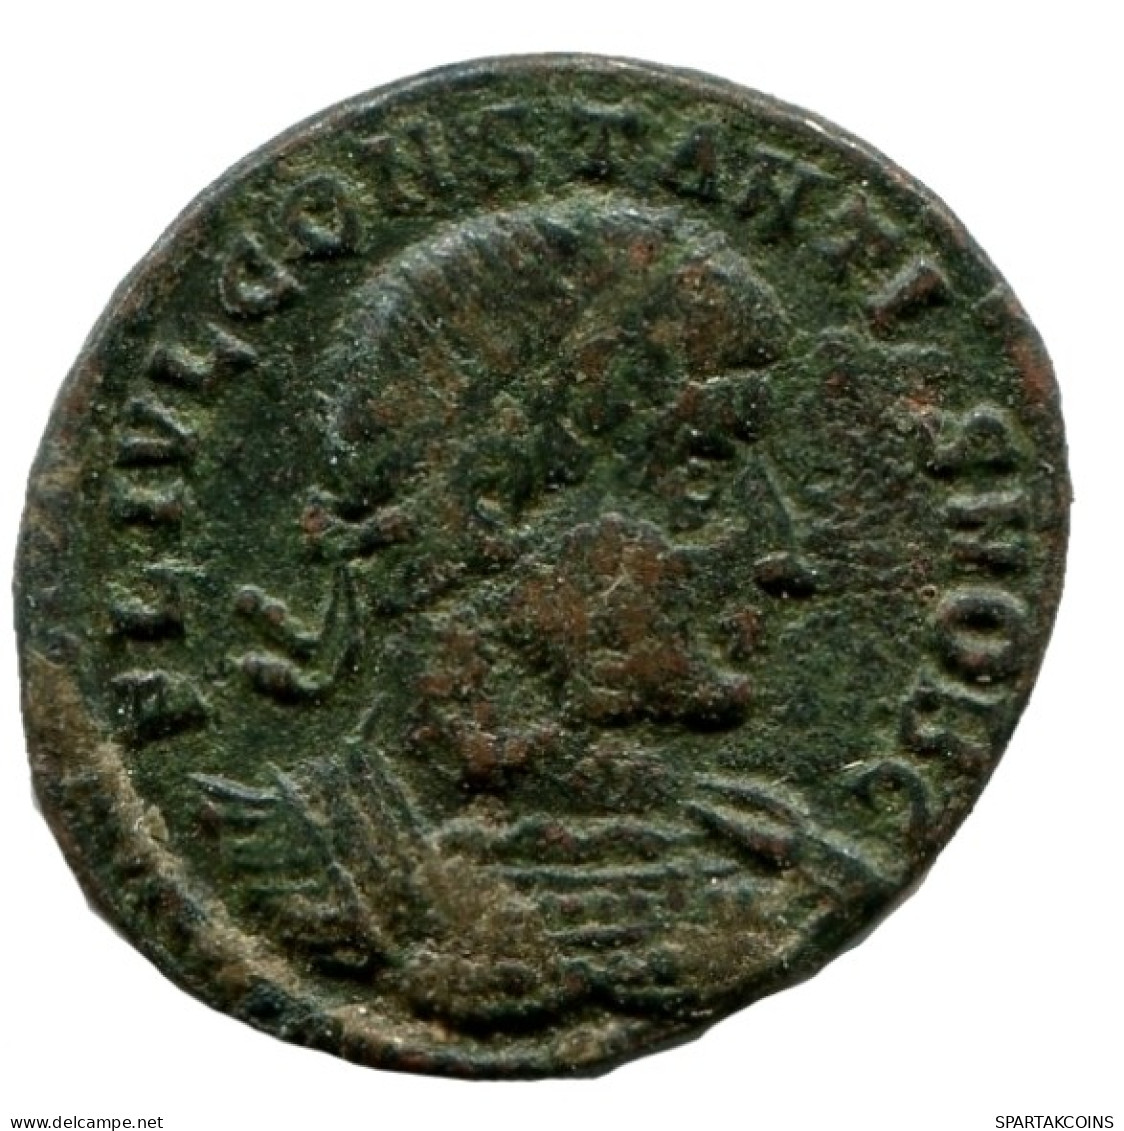 CONSTANTINE I Authentische Antike RÖMISCHEN KAISERZEIT Münze #ANC12230.12.D.A - The Christian Empire (307 AD To 363 AD)